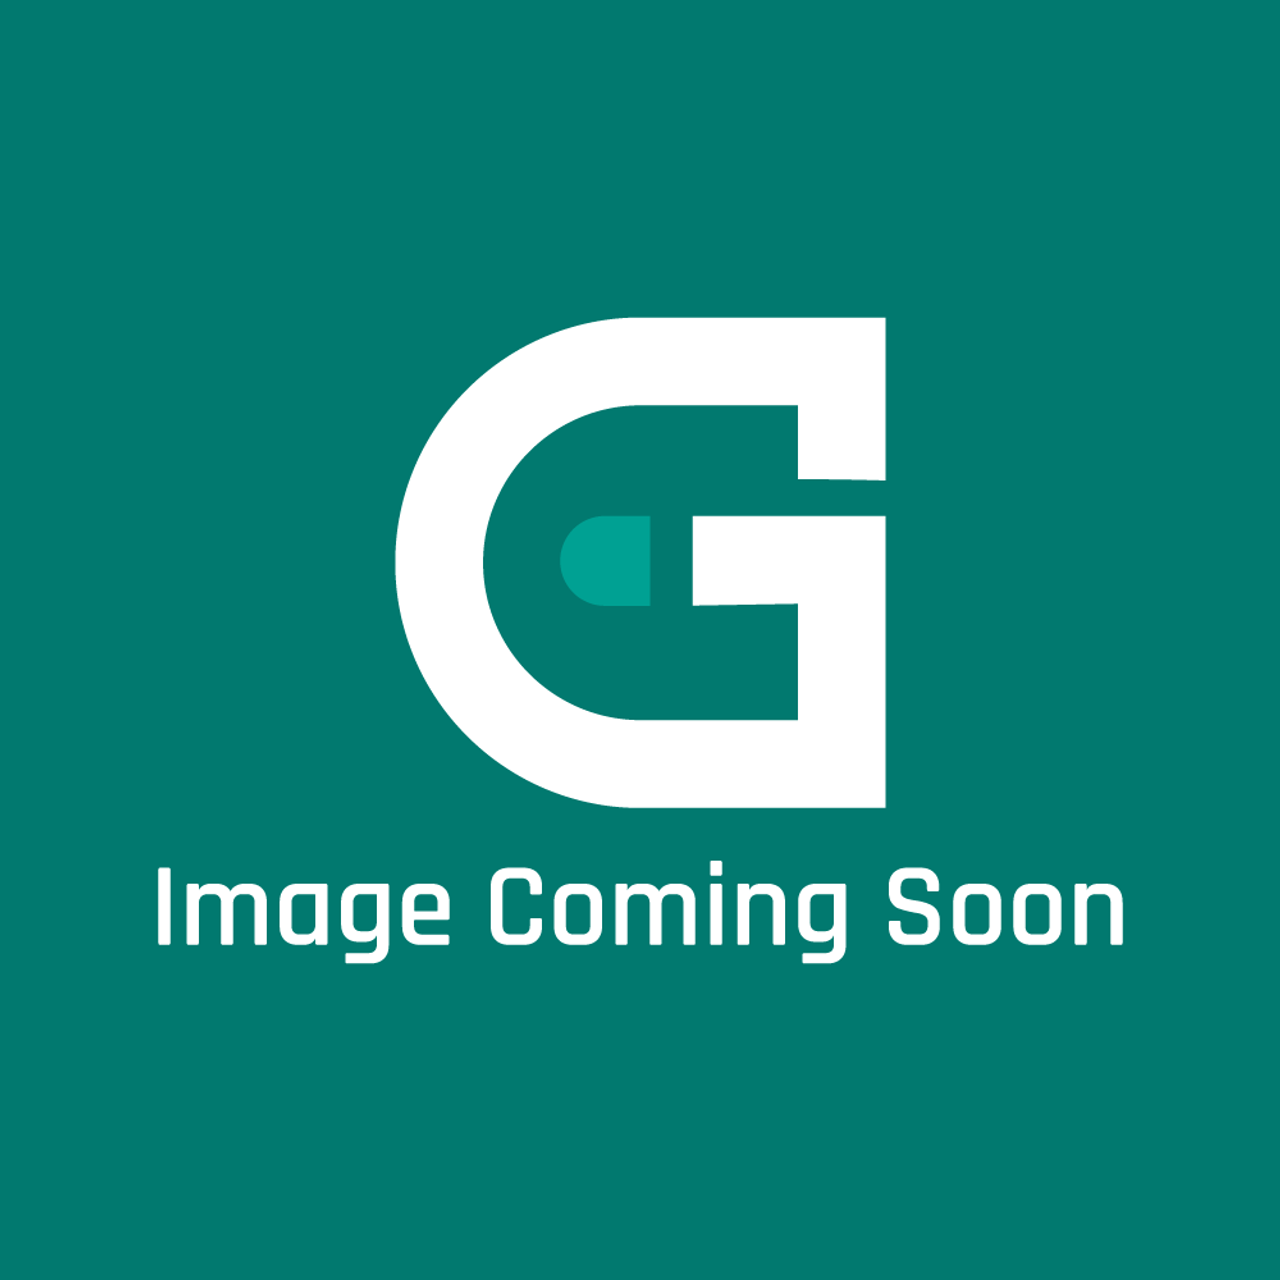 Groen Z010542 - Venturi Burner, Ah-60, 8 0, 100 - Image Coming Soon!